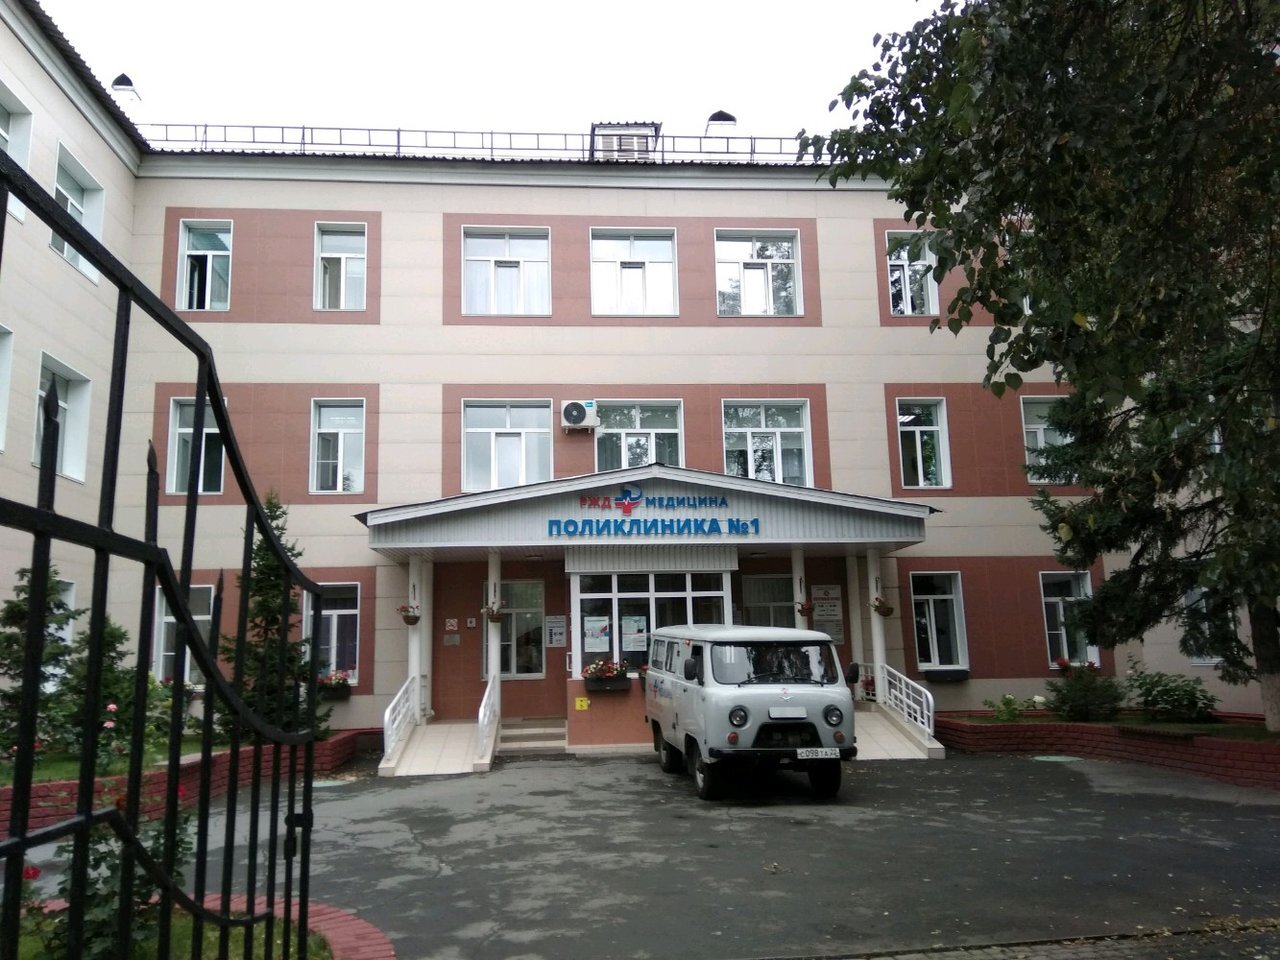 Сайт больницы ржд барнаул. Железнодорожная поликлиника Барнаул Строителей 14. Поликлиника 1 РЖД Барнаул Строителей 14. Железнодорожная больница г Барнаул. Поликлиника 1 Барнаул Железнодорожная больница.